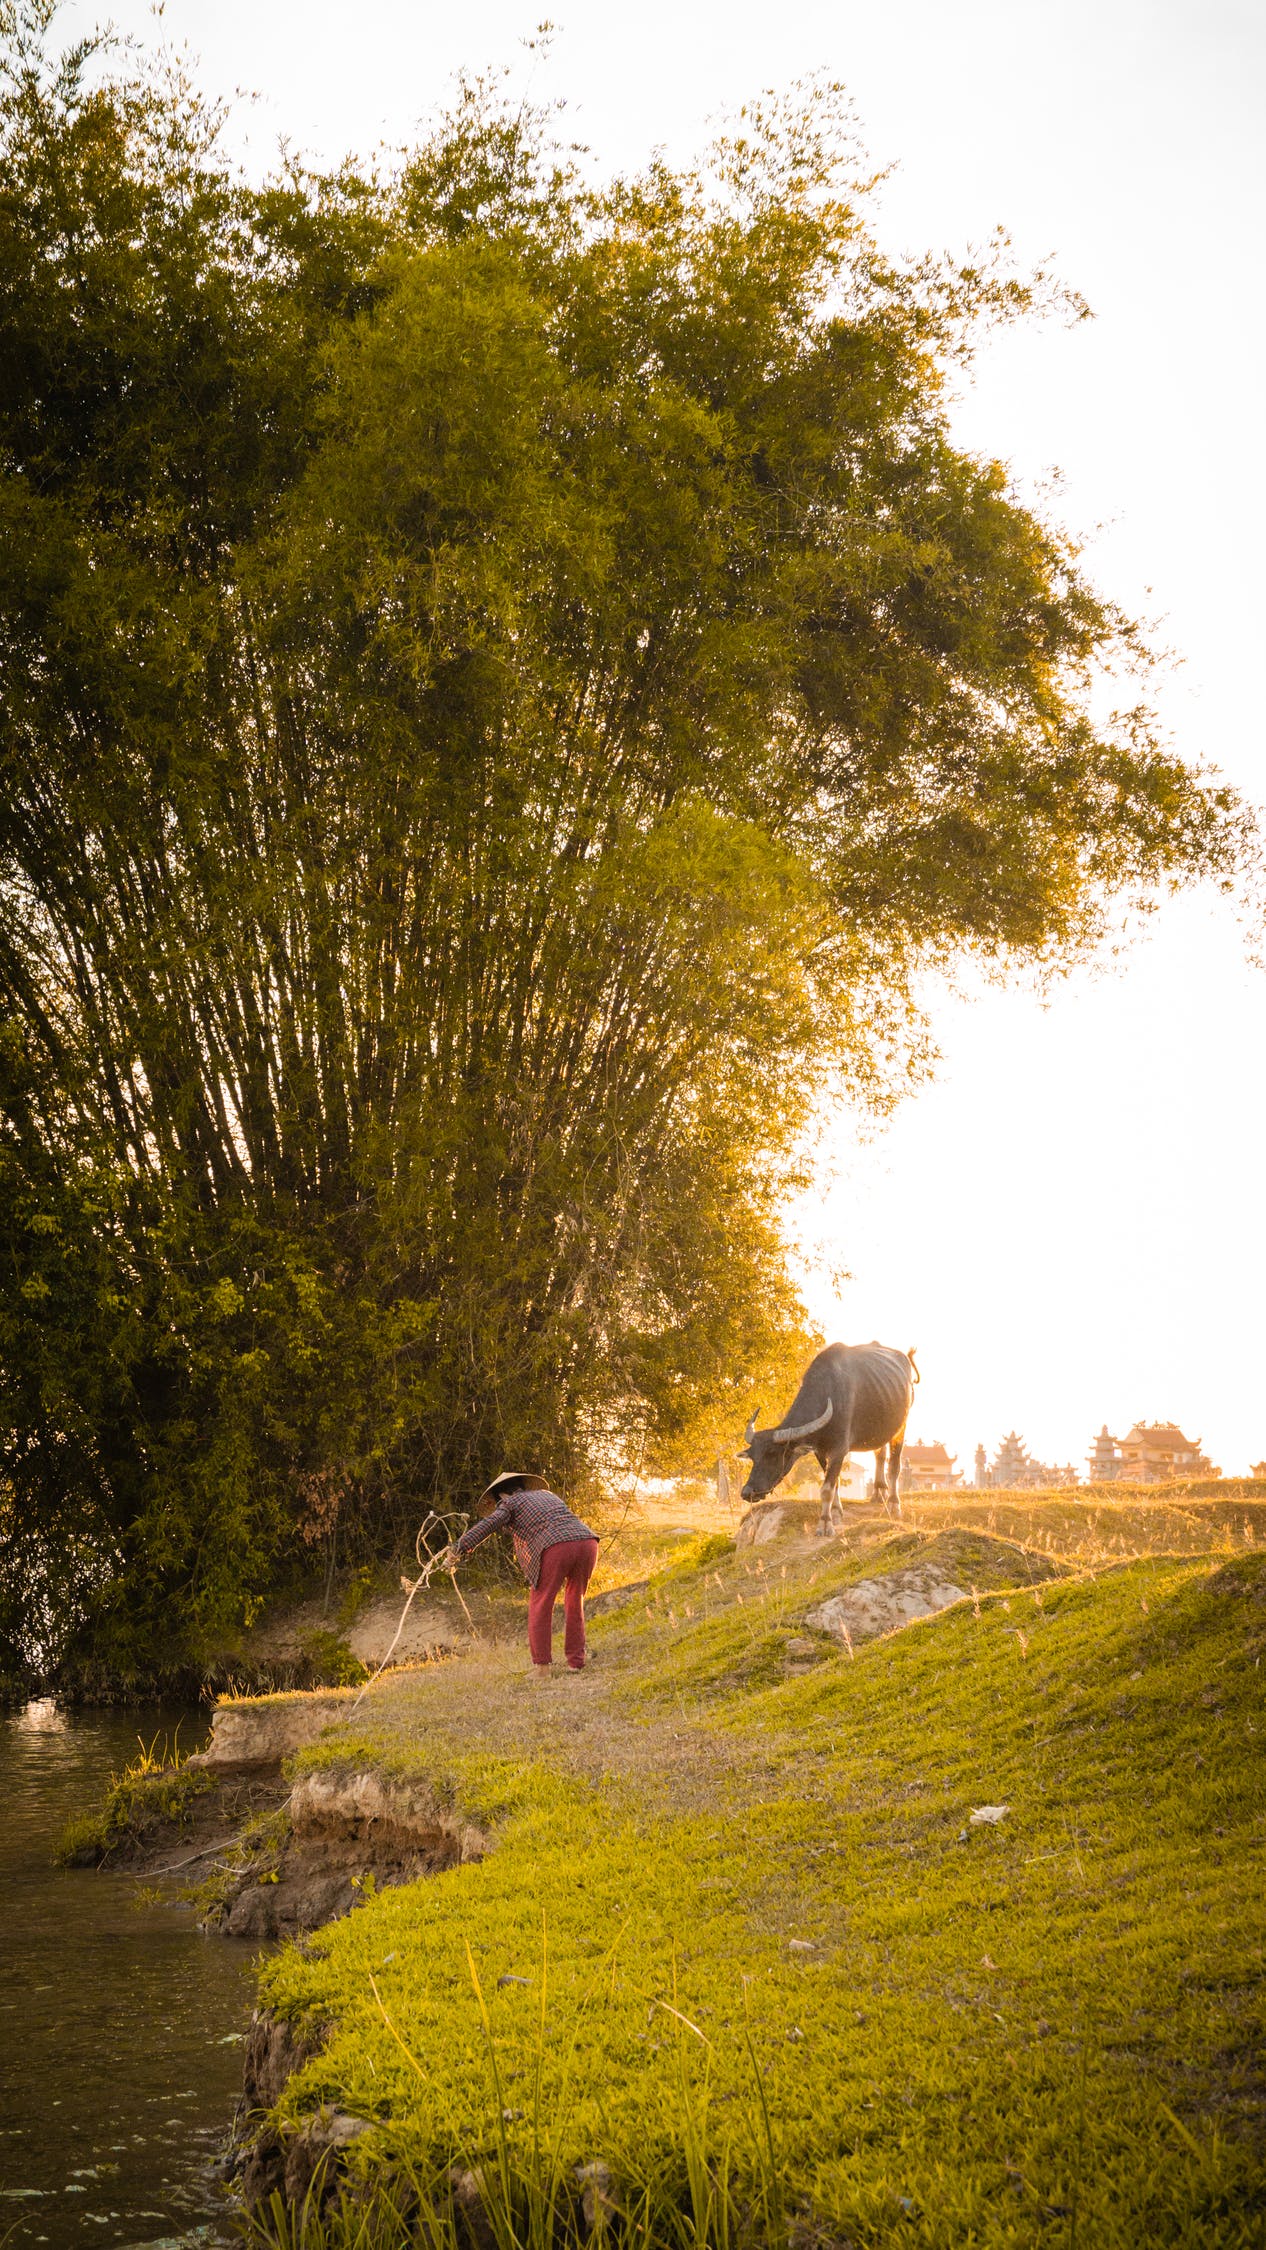 Làng quê: Hãy thưởng thức những hình ảnh tuyệt đẹp về những làng quê Việt Nam. Đây là nơi muôn người mong muốn trở lại để tìm về bình yên, lặng lẽ trong làn gió mát và hòa cùng thiên nhiên xanh tươi.